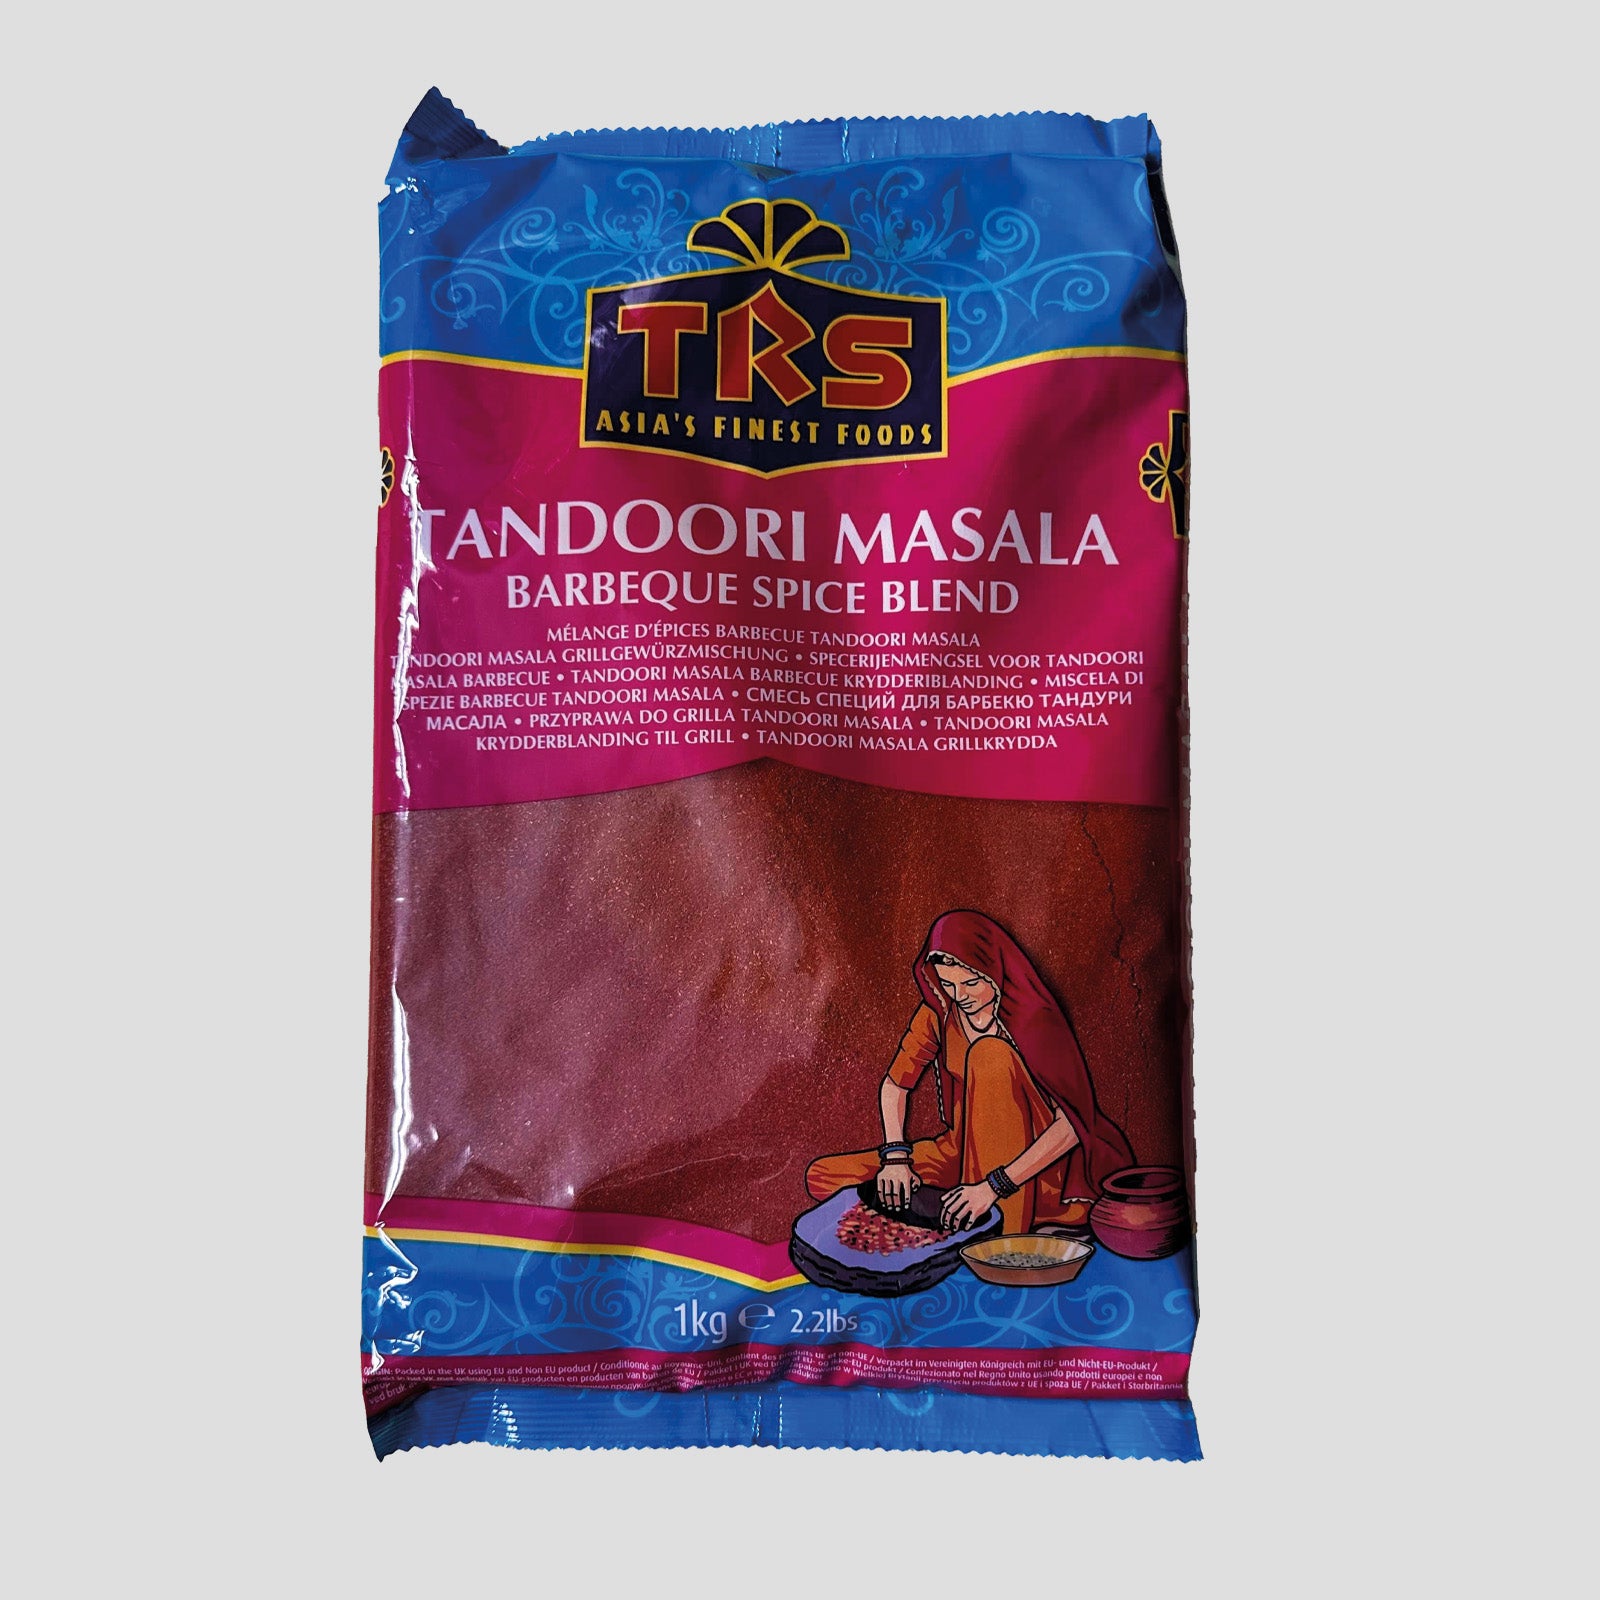 TRS - Tandoori Masala